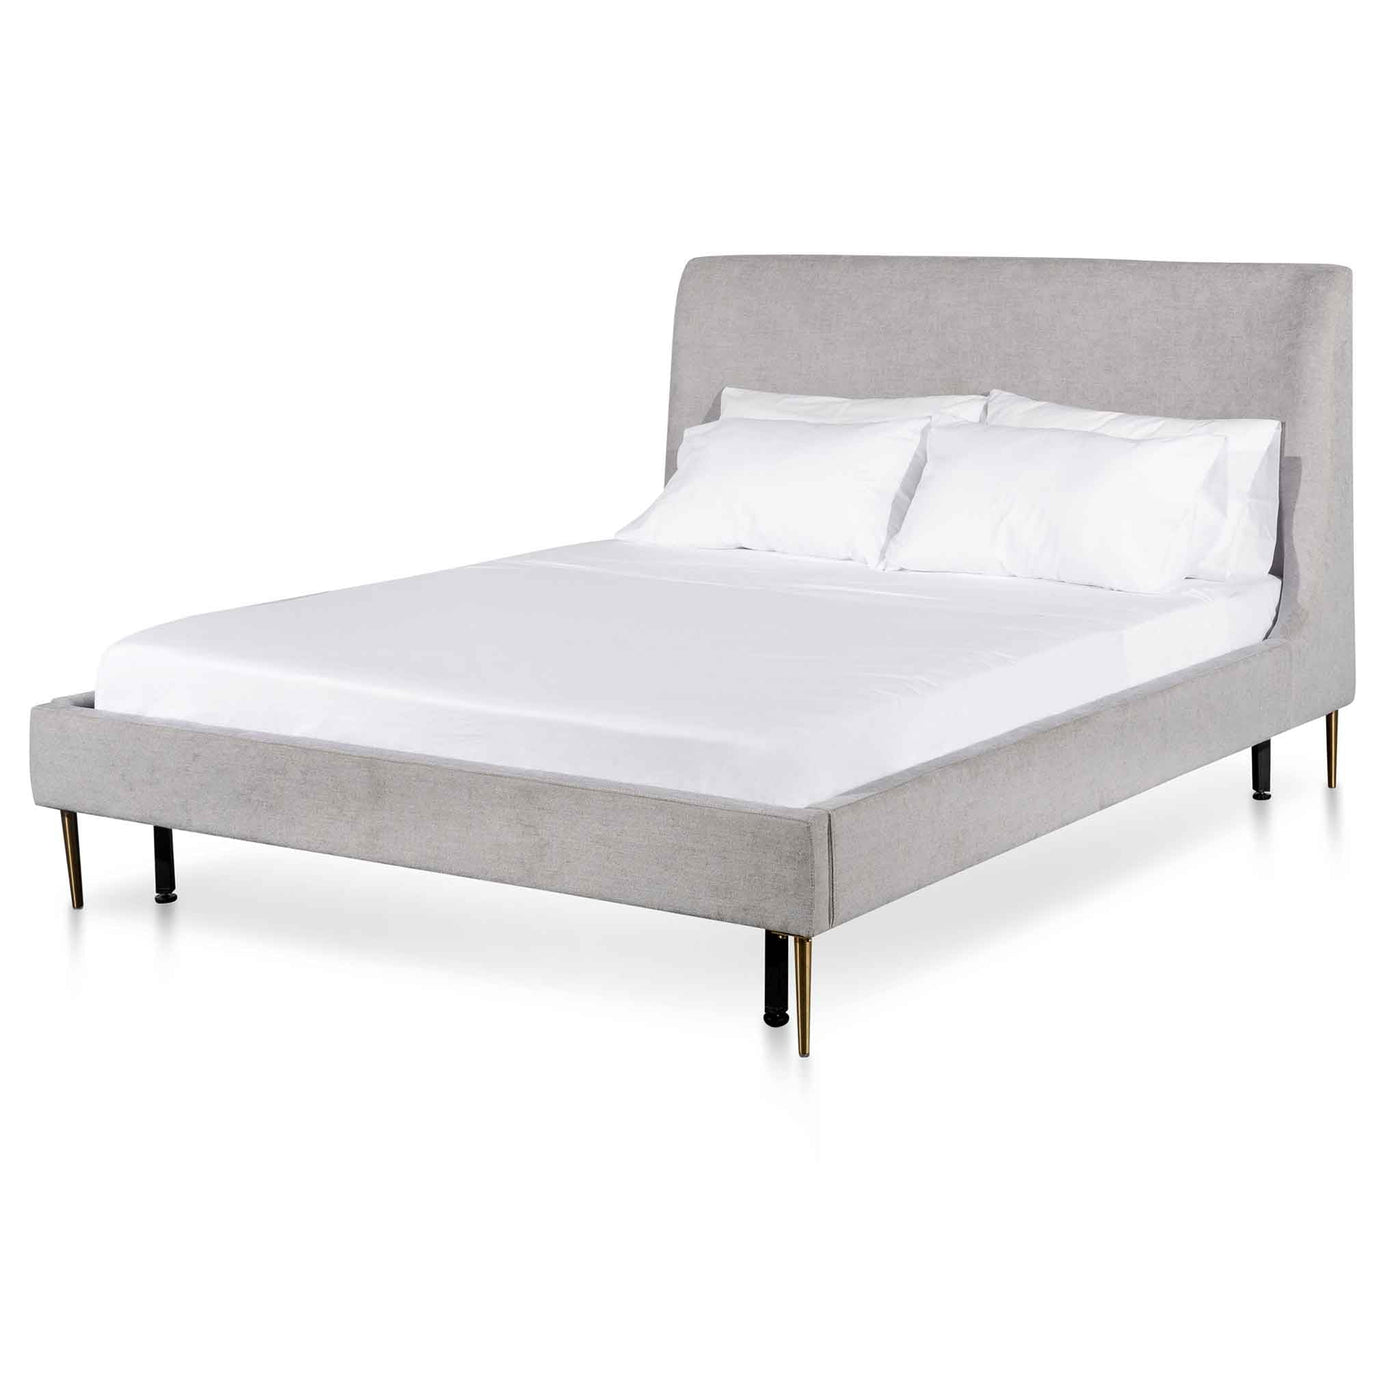 Queen Bed Frame - Comfort Grey